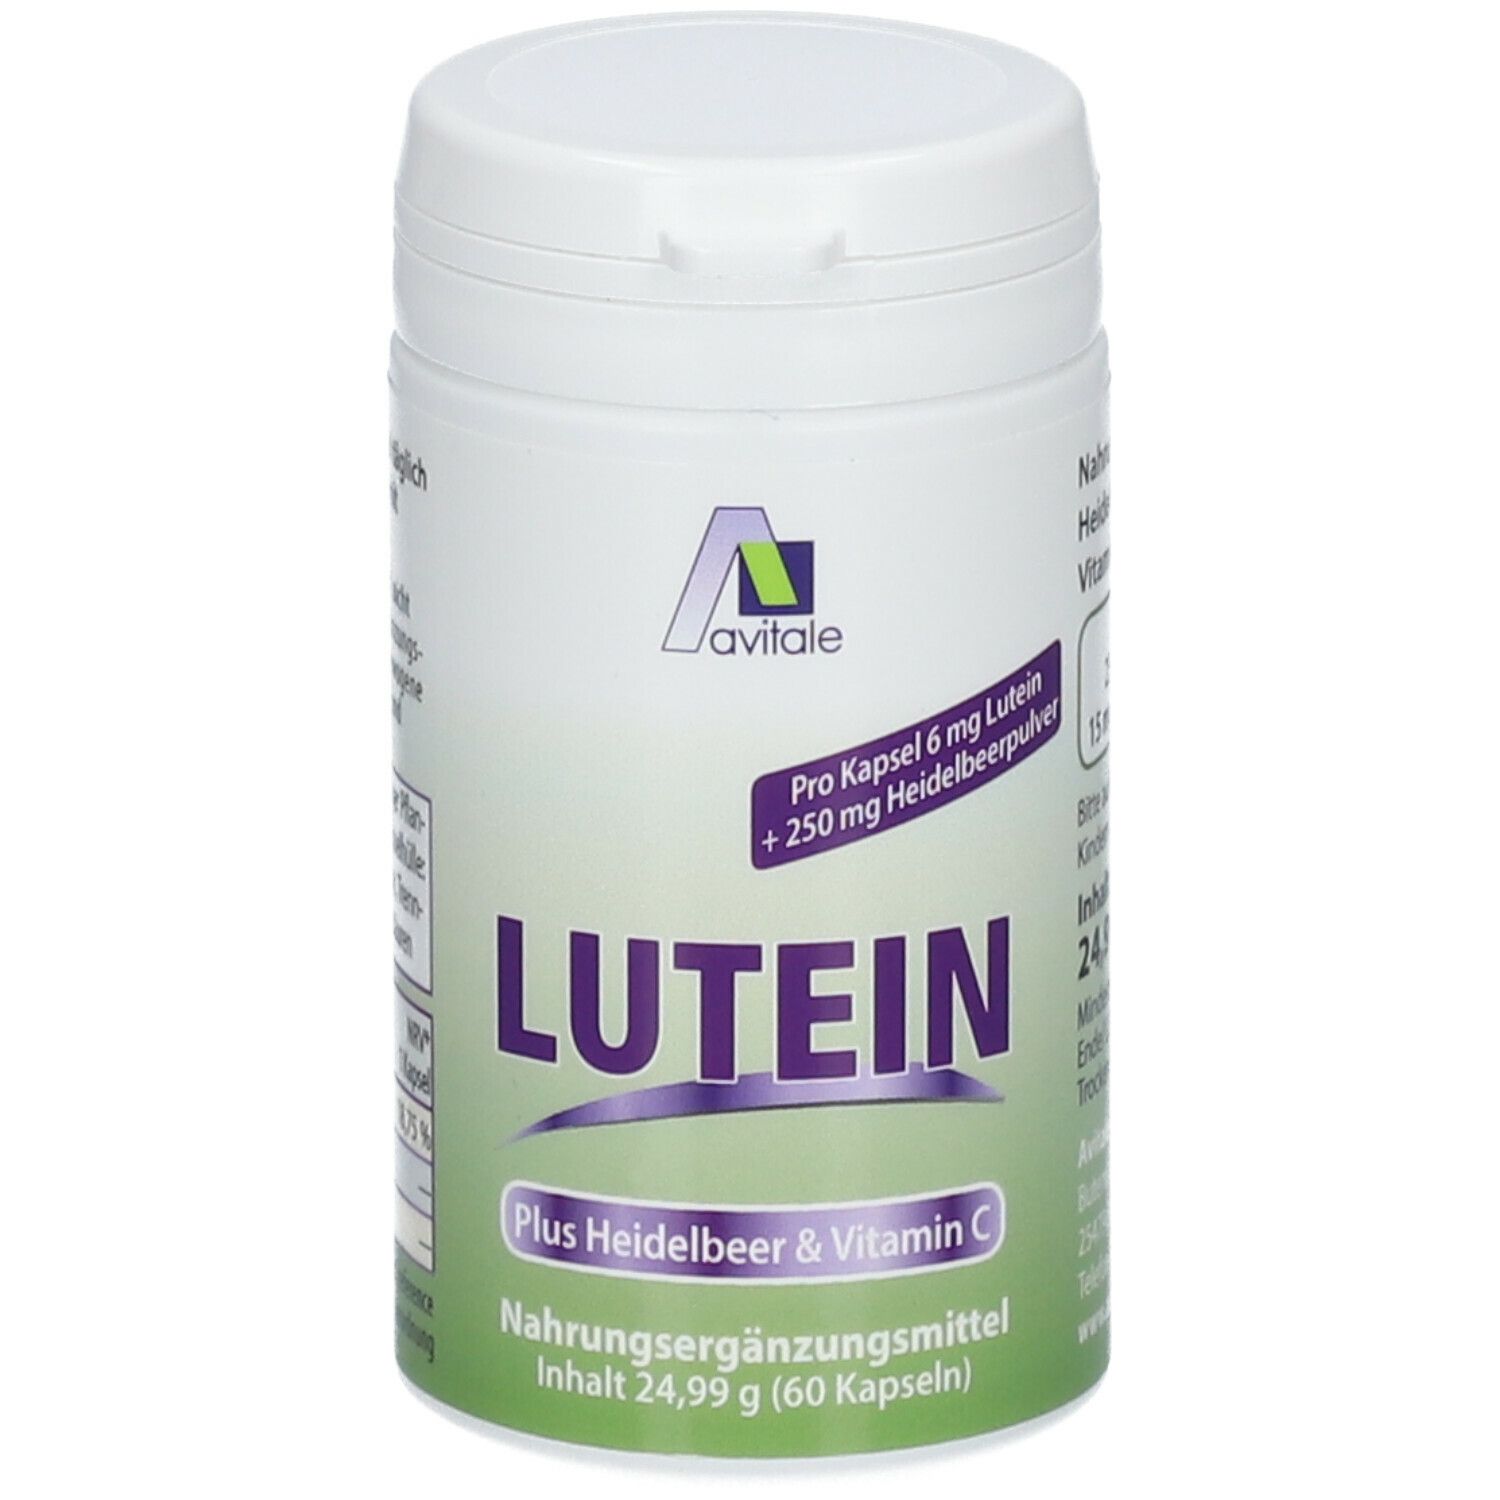 Image of Avitale Lutein 6 mg+ Heidelbeer